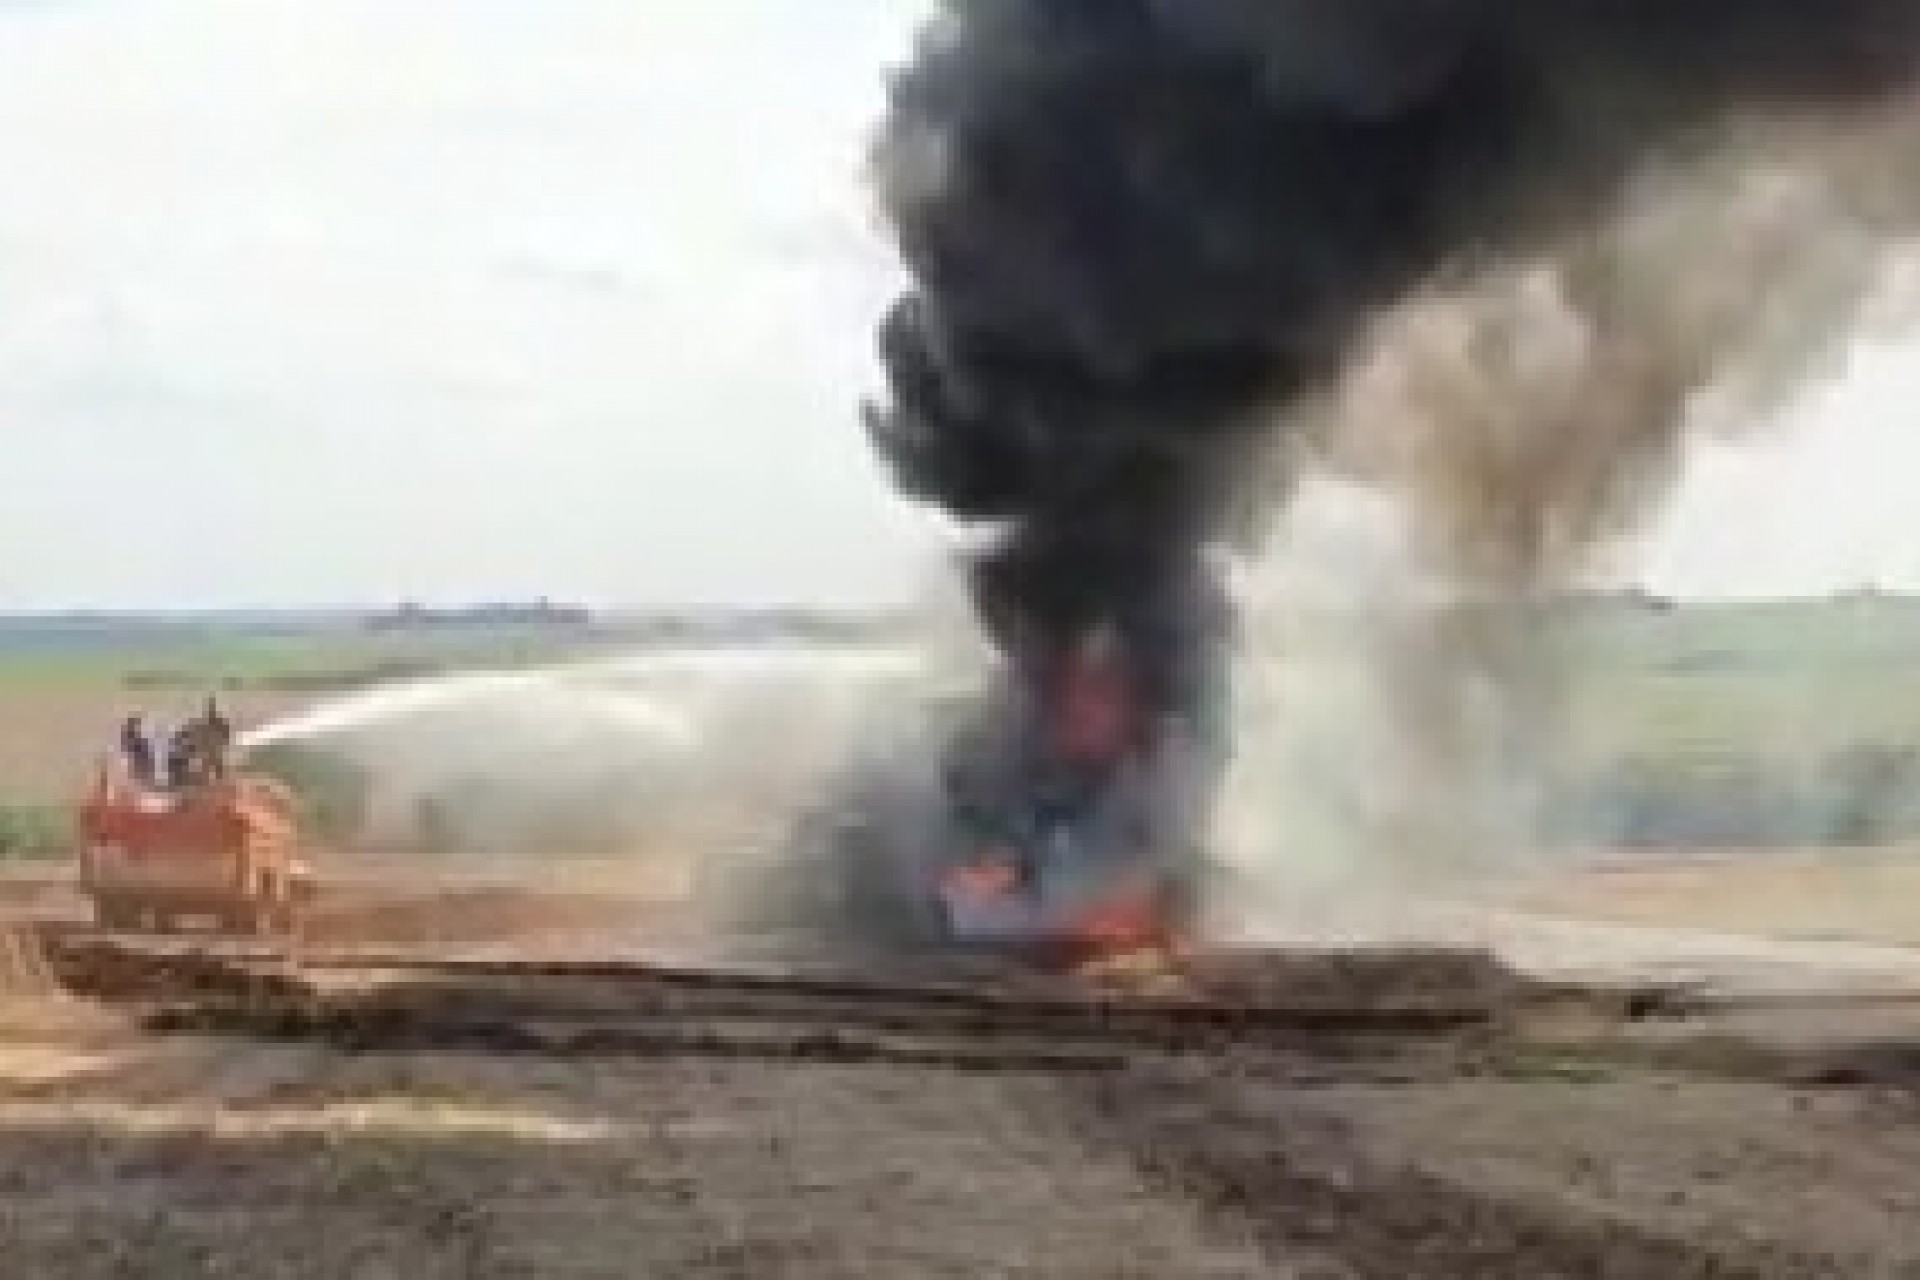 Colheitadeira fica destruída em incêndio no interior do município de Missal